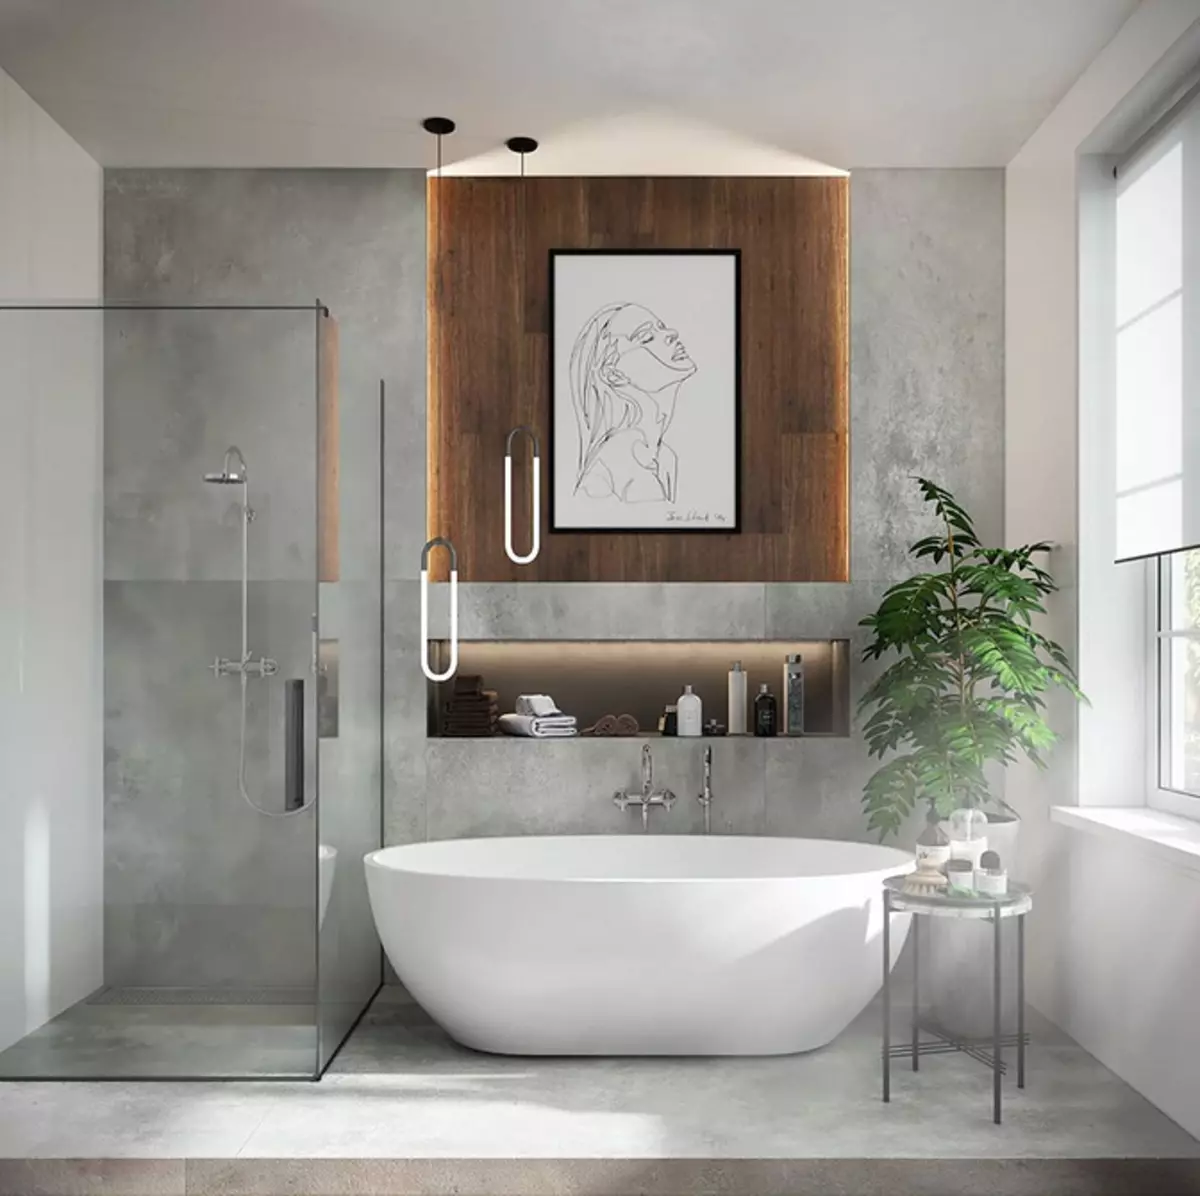 Diseño de baño con ducha y baño: ideas interiores en 75 fotos - IVD.RU 4108_23